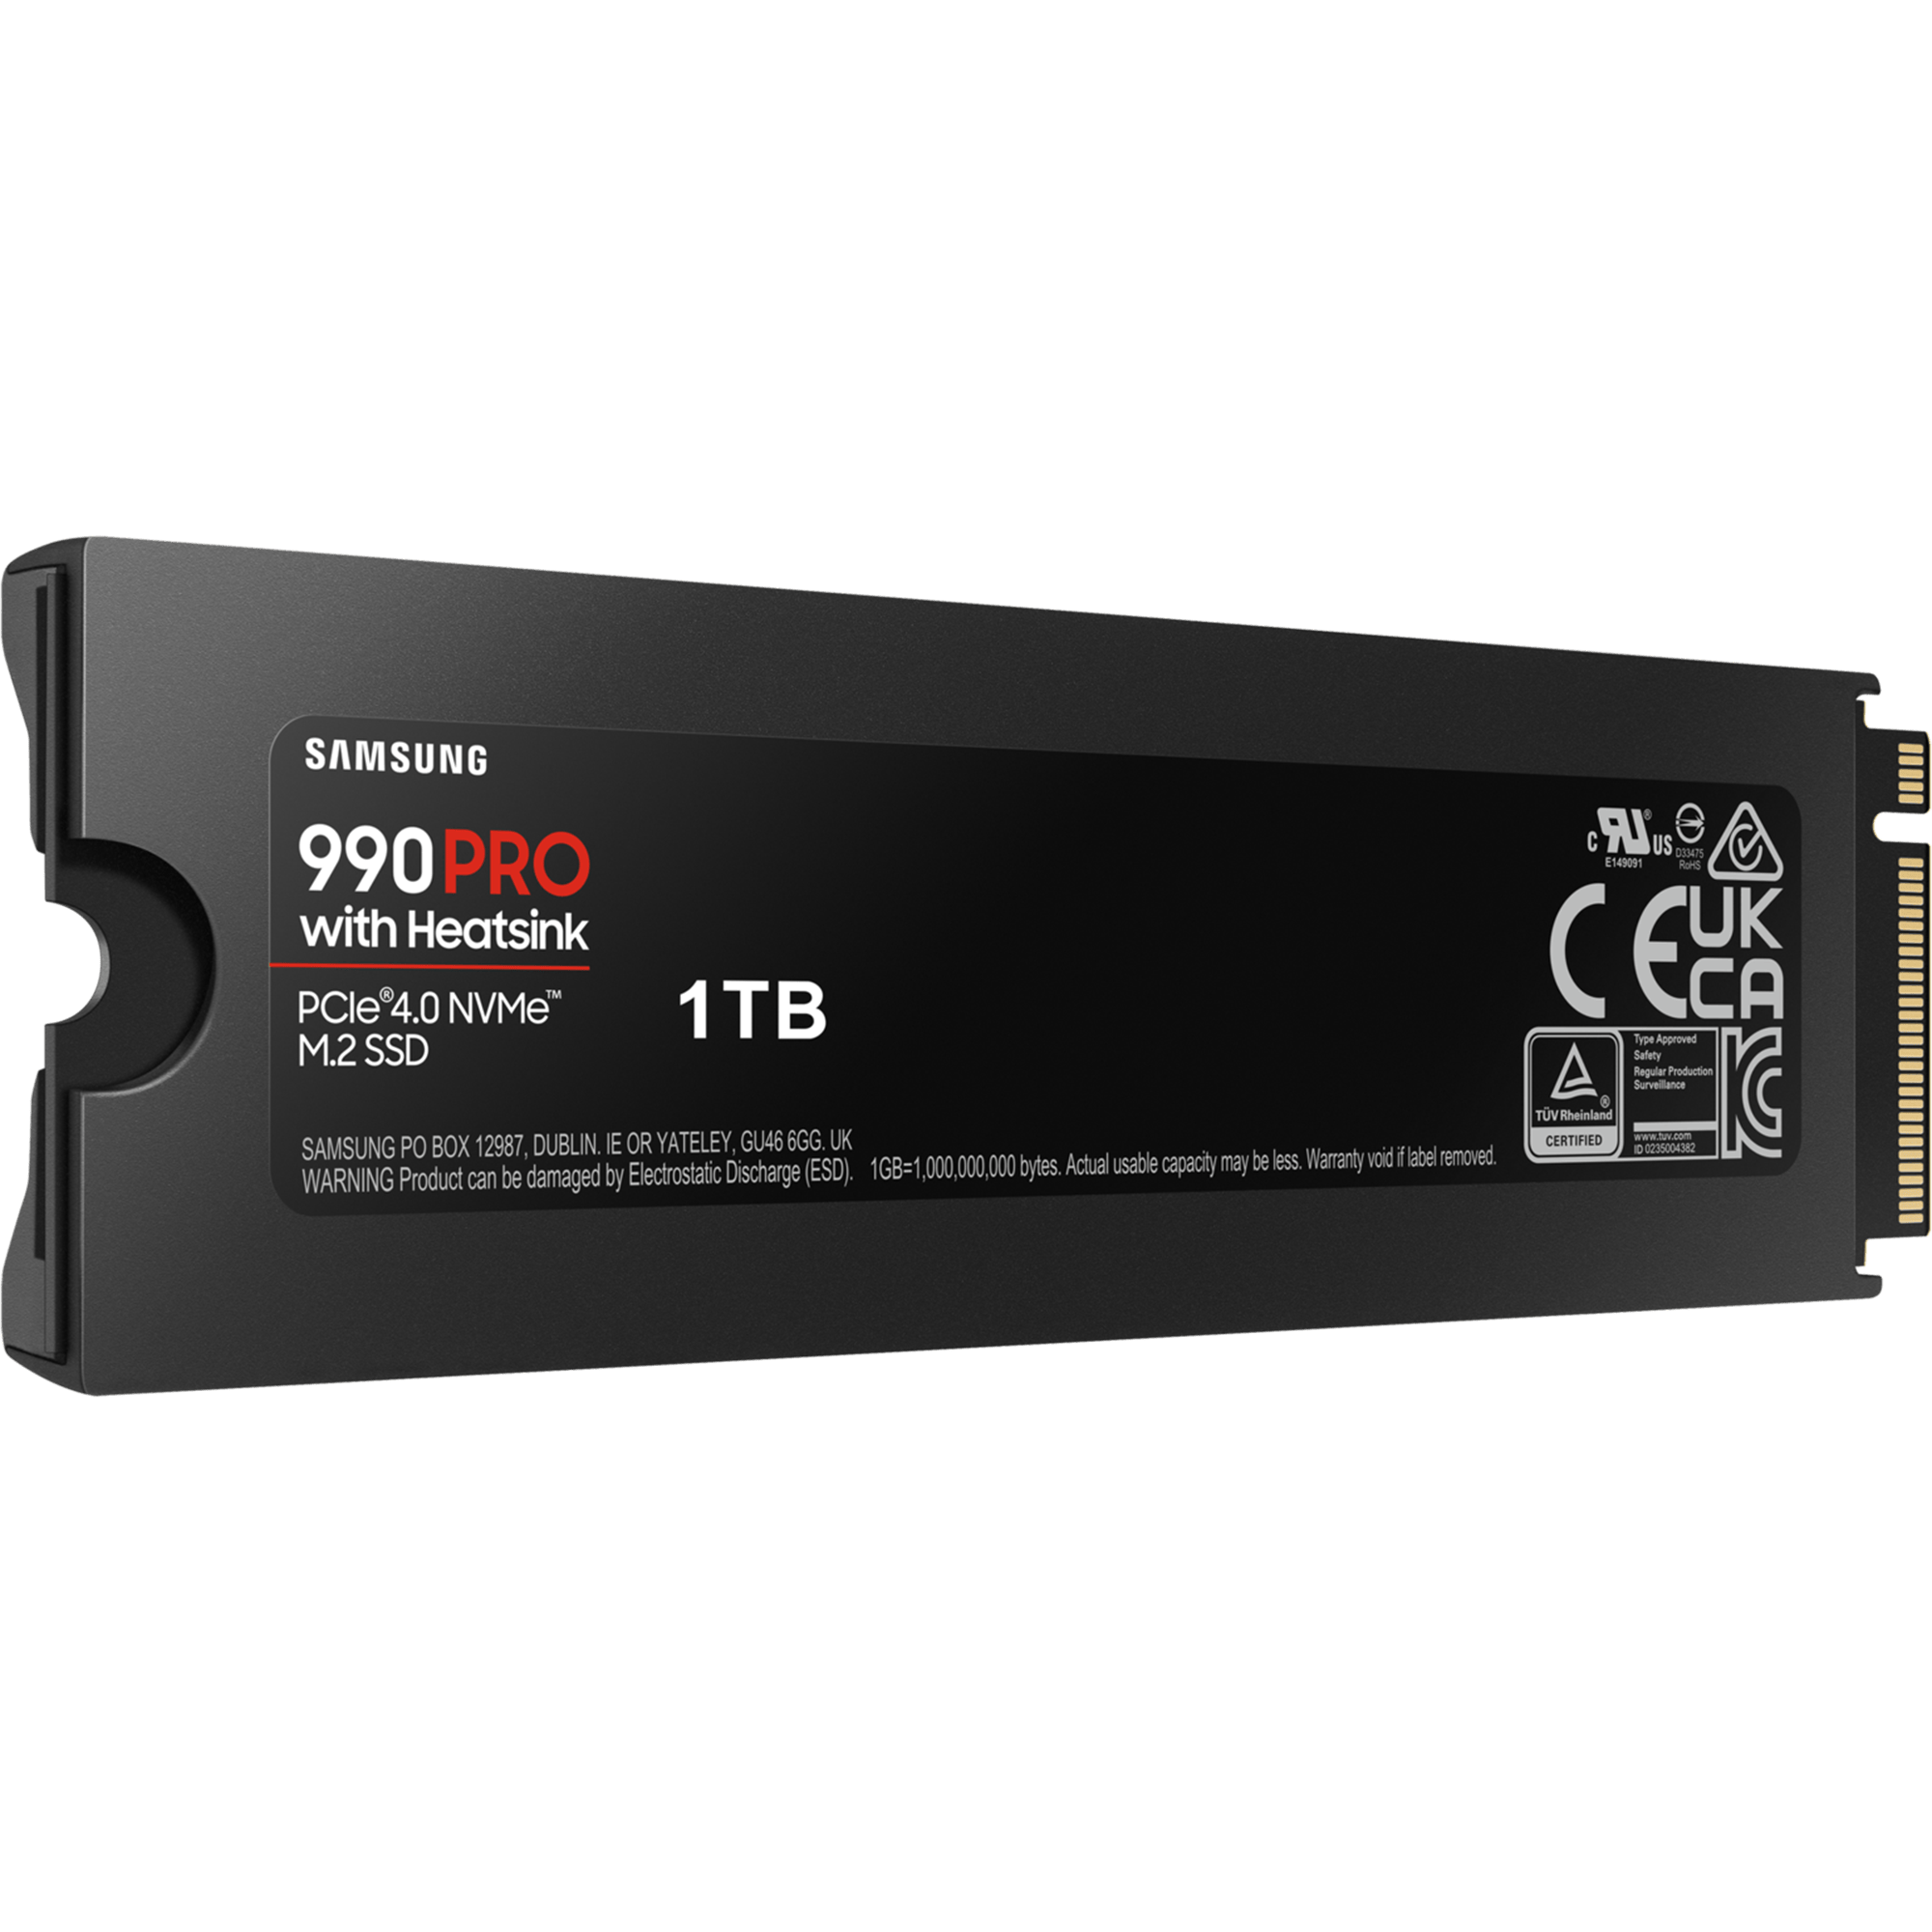 כונן SSD פנימי עם צלעות קירור Samsung 990 Pro 1TB Heatsink PCIe 4.0 NVMe M.2 - צבע שחור חמש שנות אחריות ע